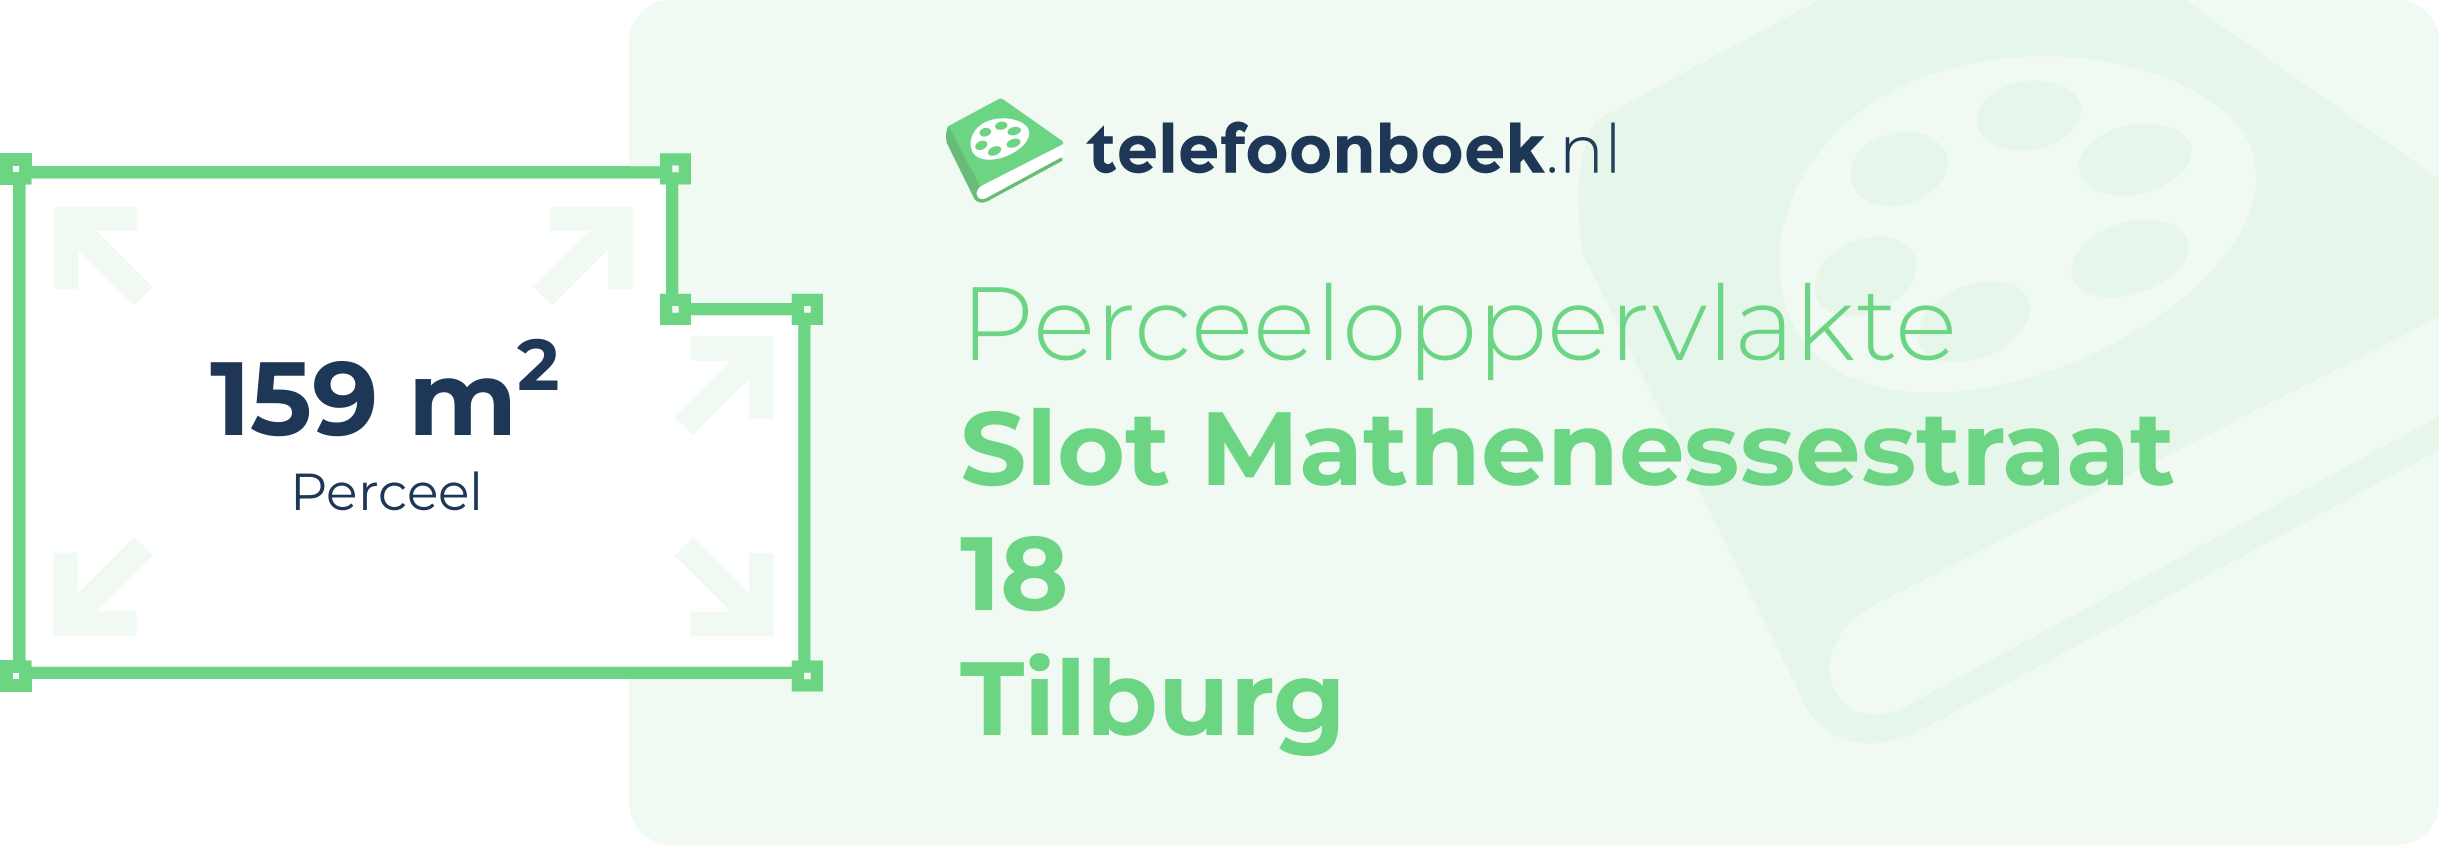 Perceeloppervlakte Slot Mathenessestraat 18 Tilburg